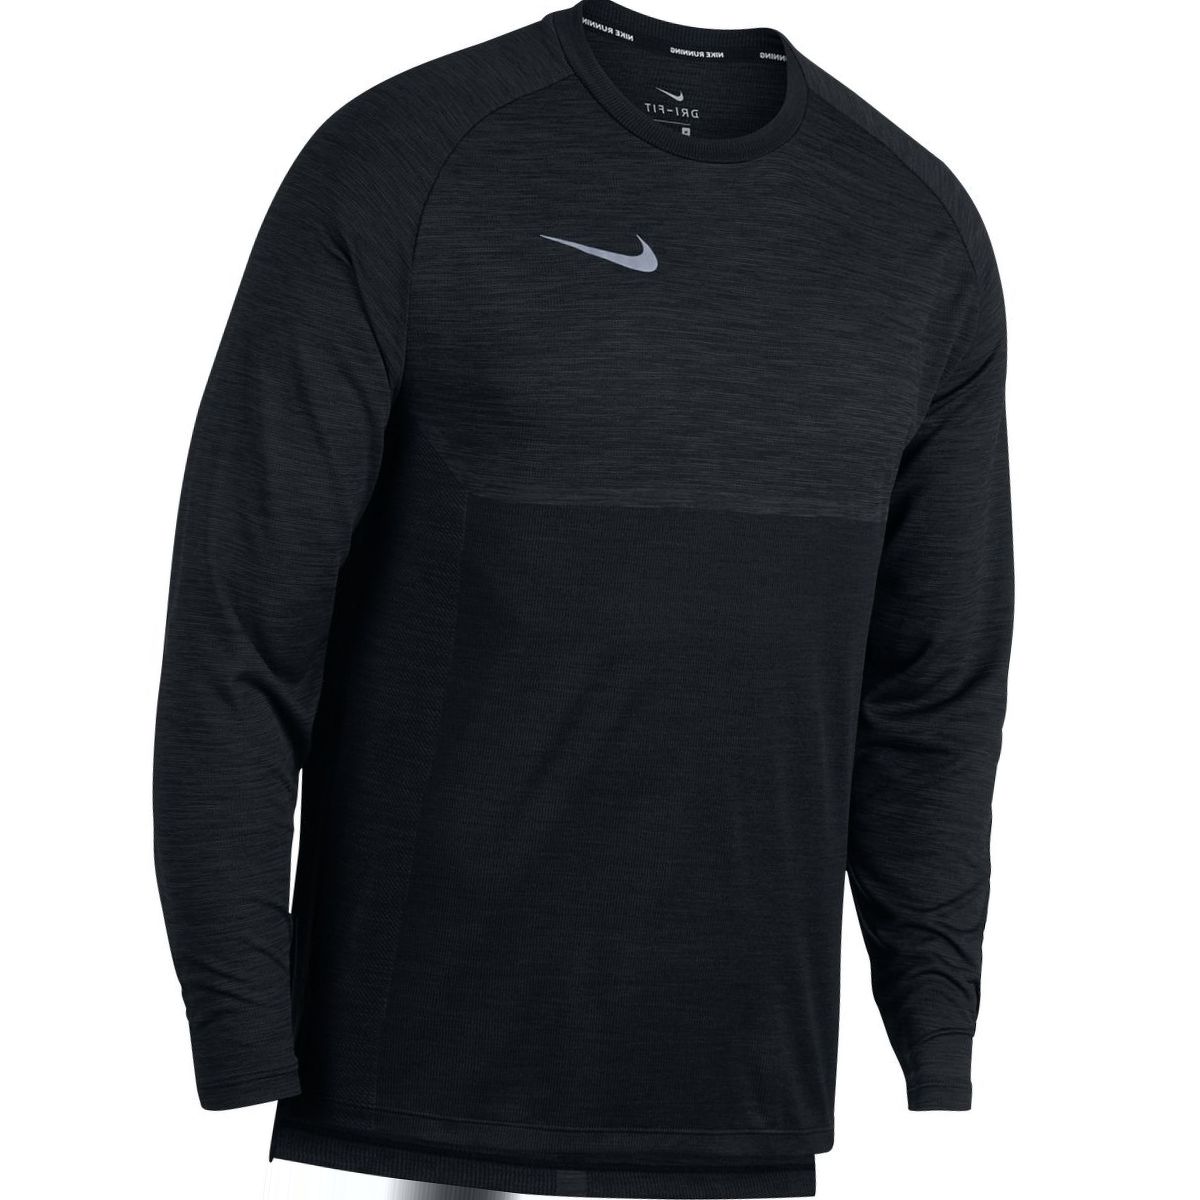 Nike Dry Medalist Long-Sleeve Top - Men's